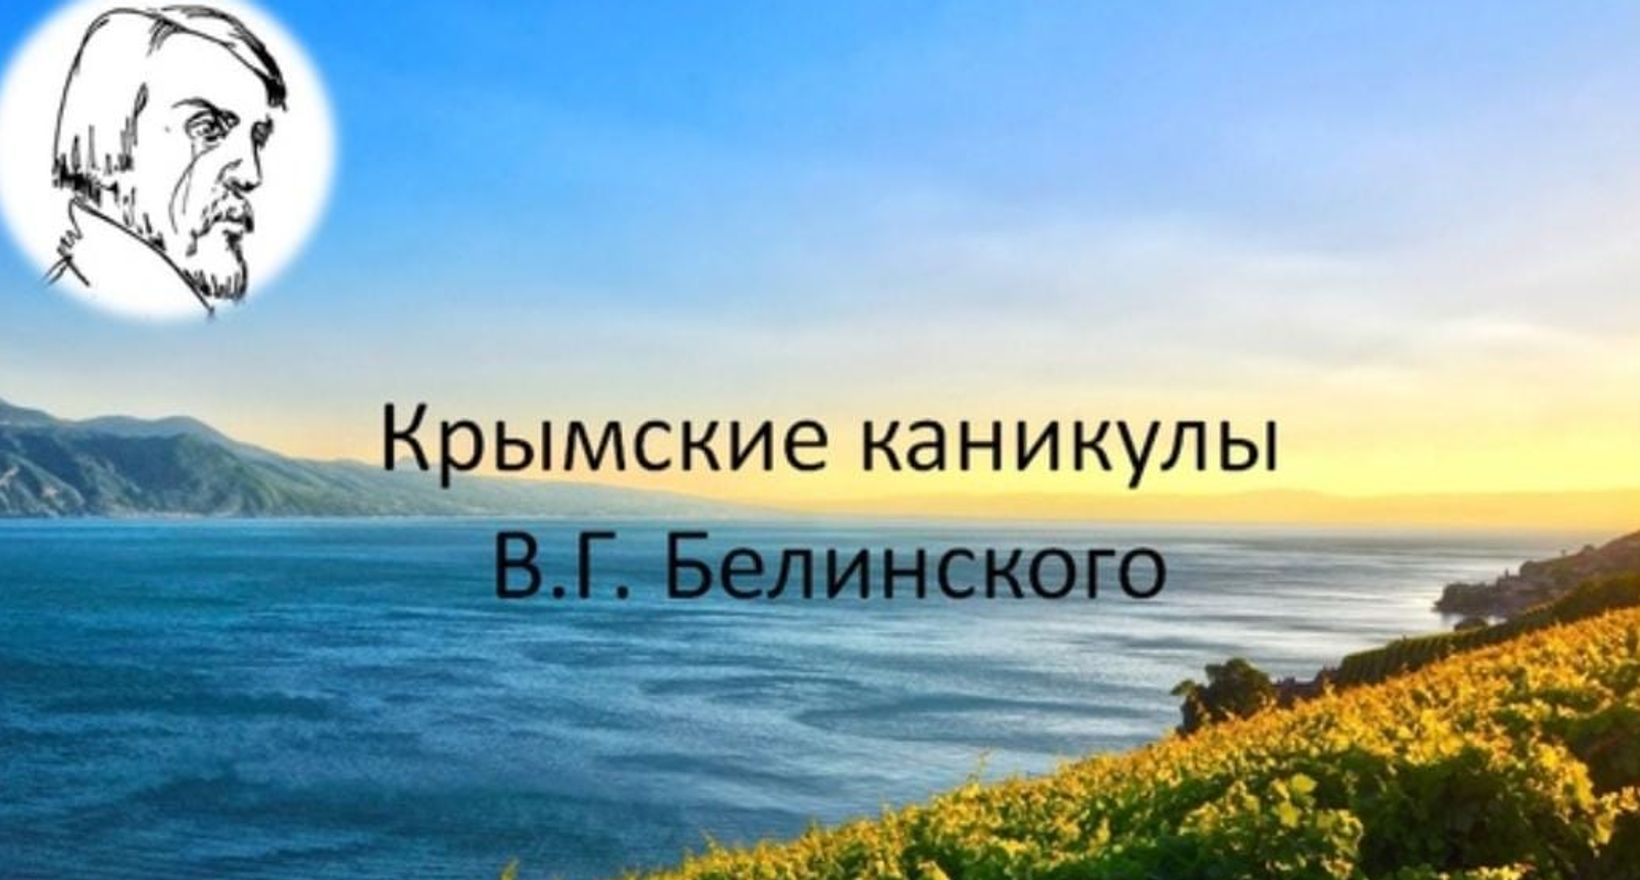 Программа «Крымские каникулы» В. Г. Белинского»